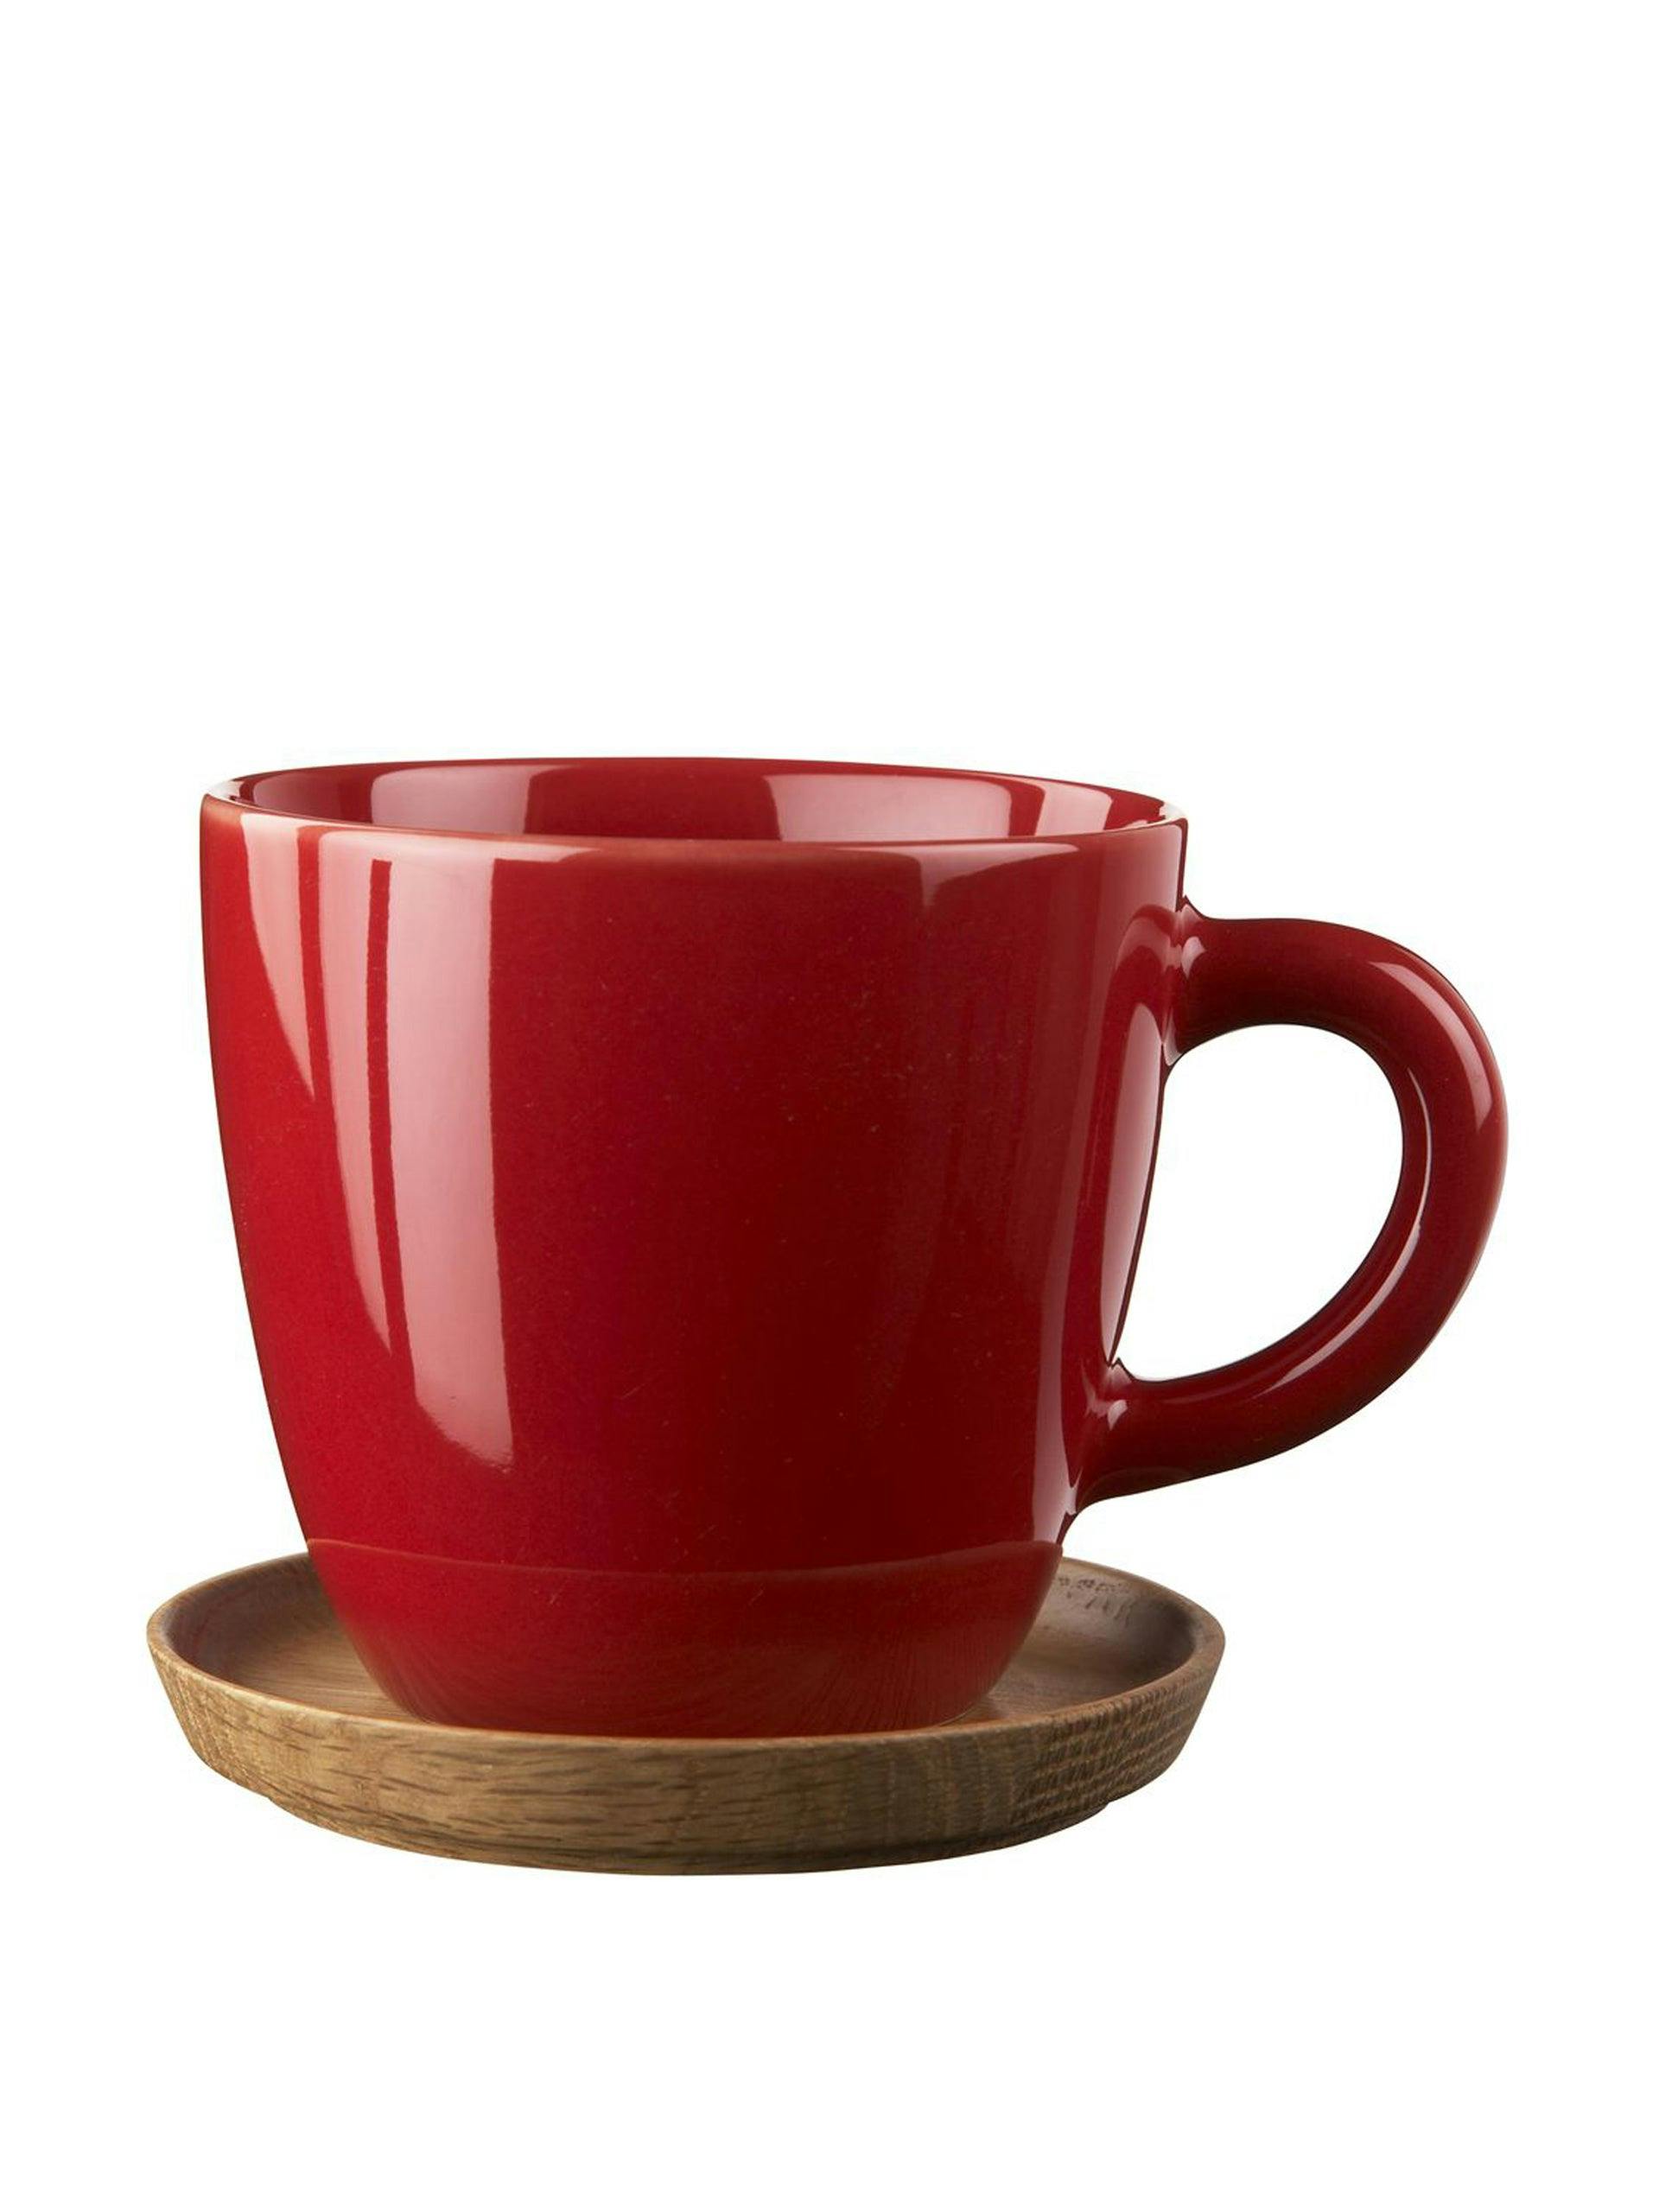 Coffee mug with saucer